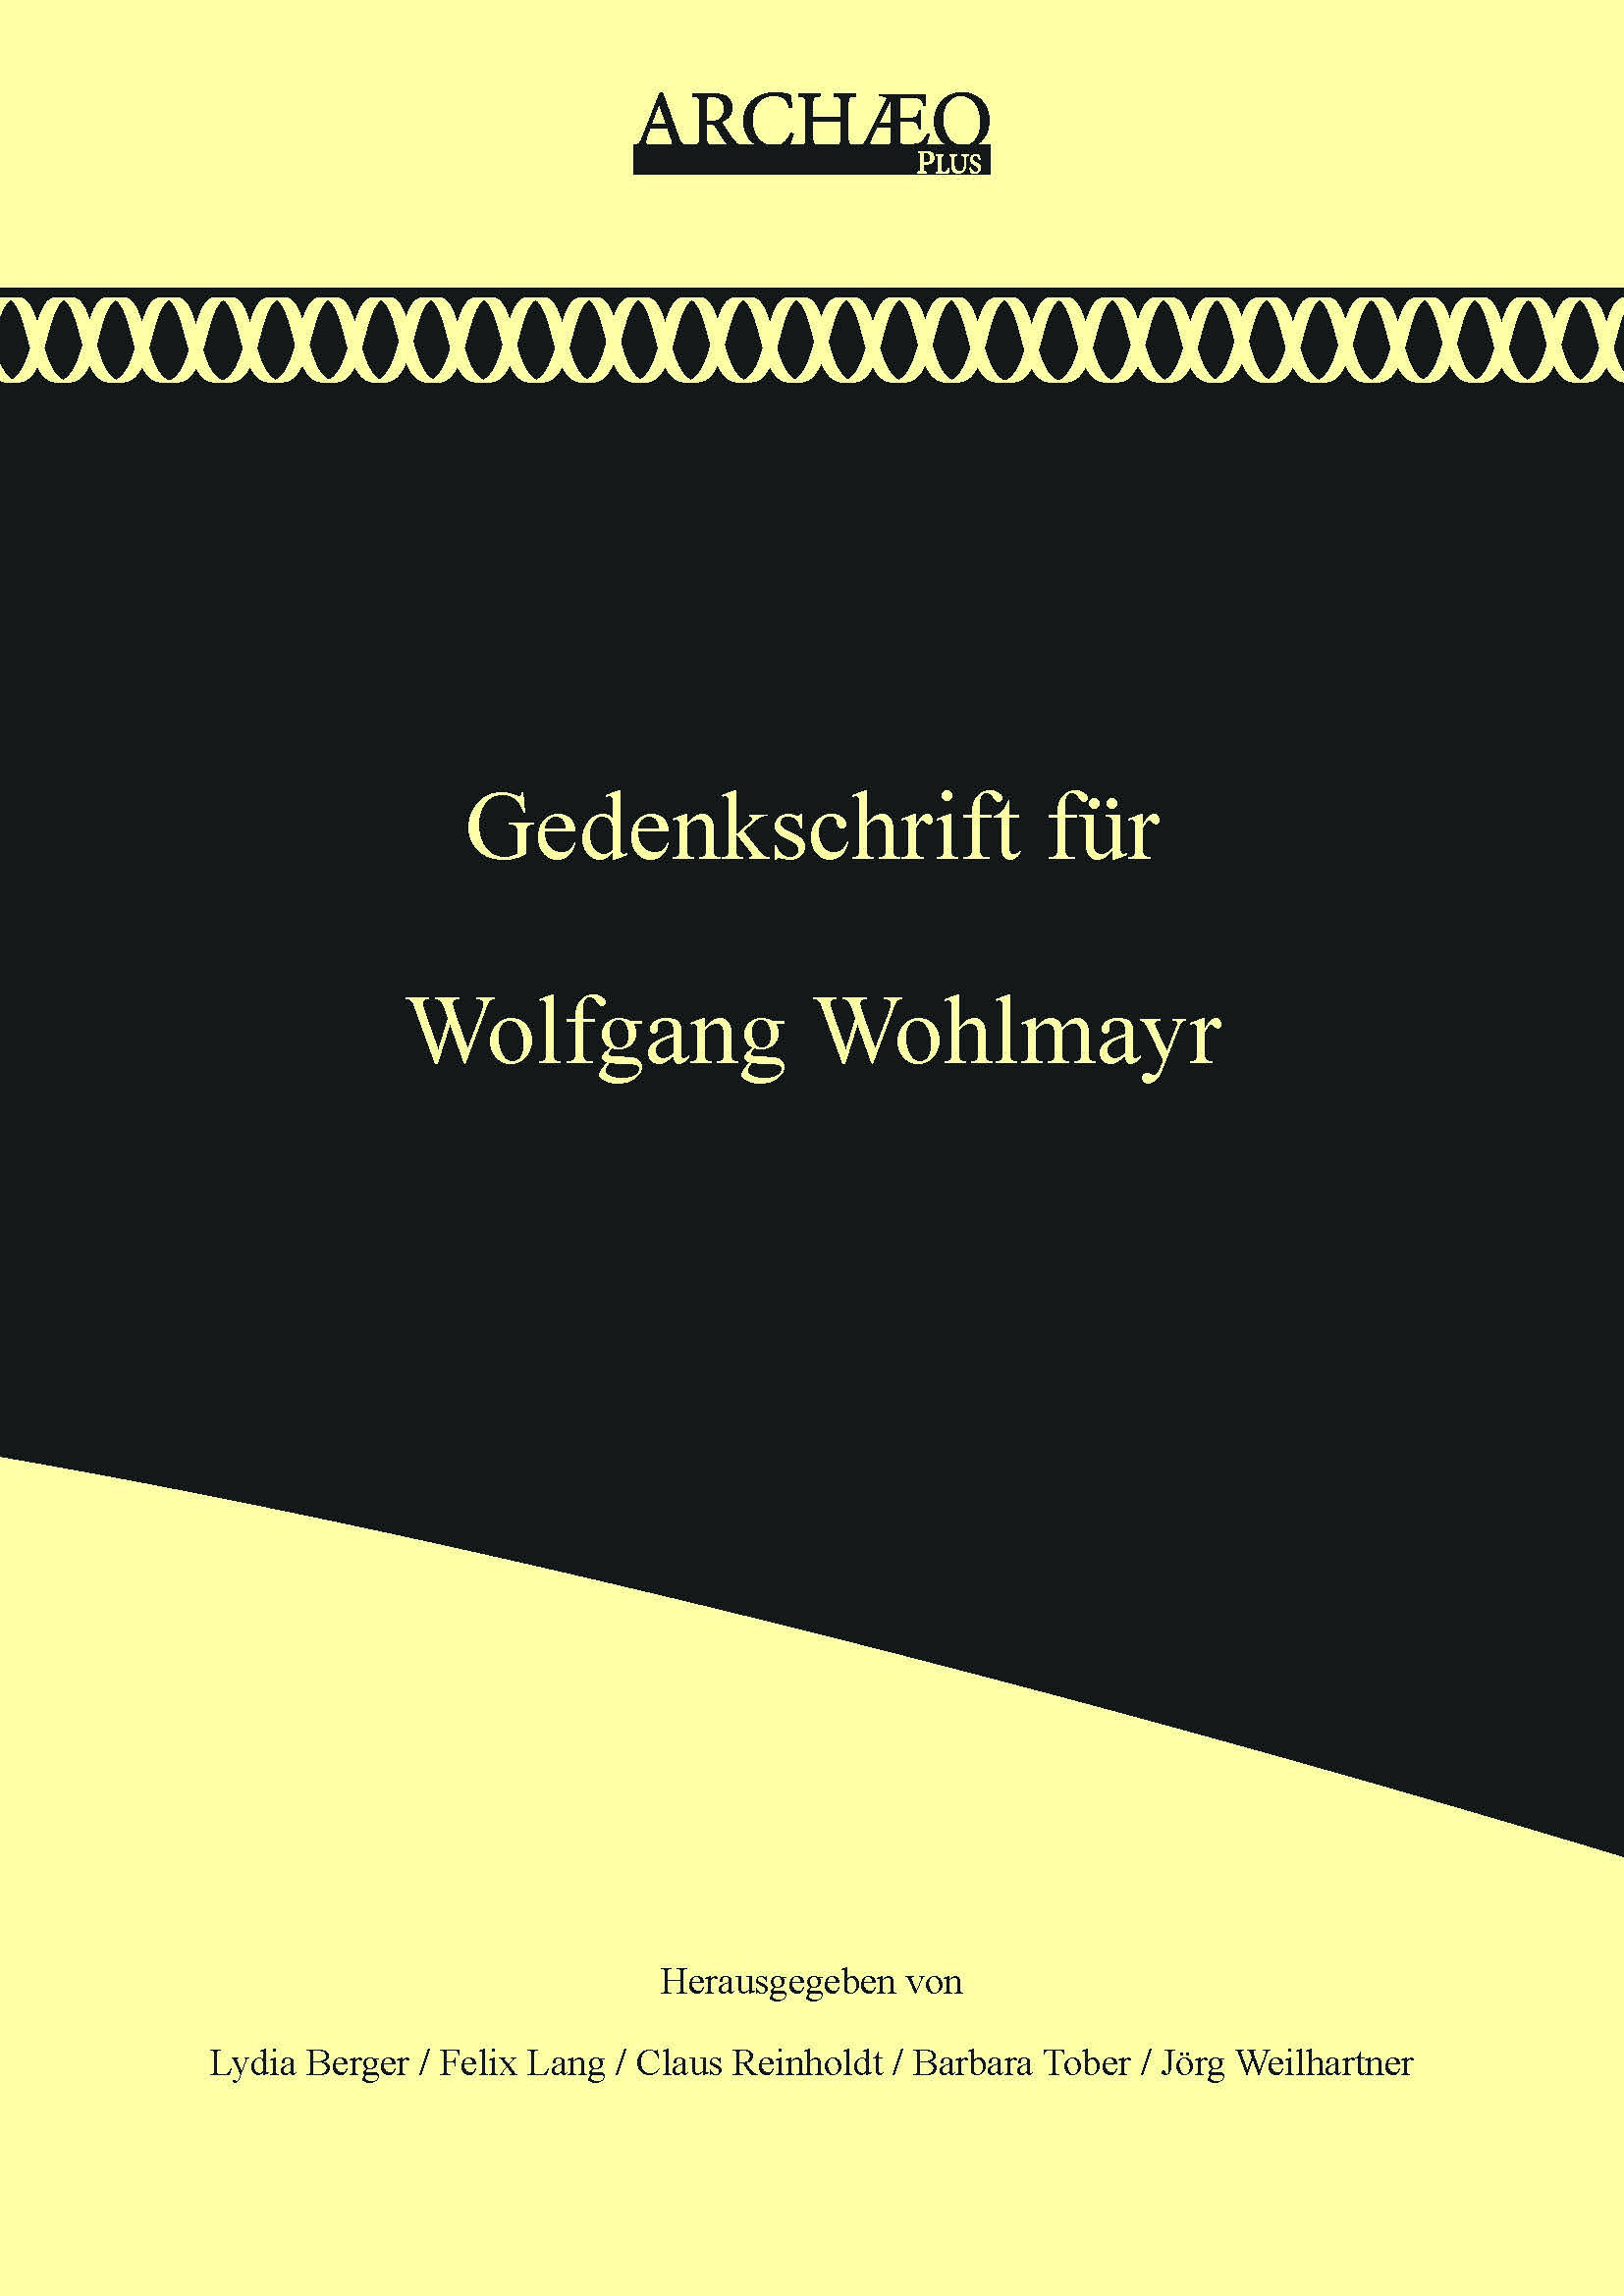 Berger, Lydia – Felix Lang –  Claus Reinholdt – Barbara Tober – Jörg Weilhartner : Gedenkschrift für Wolfgang Wohlmayr